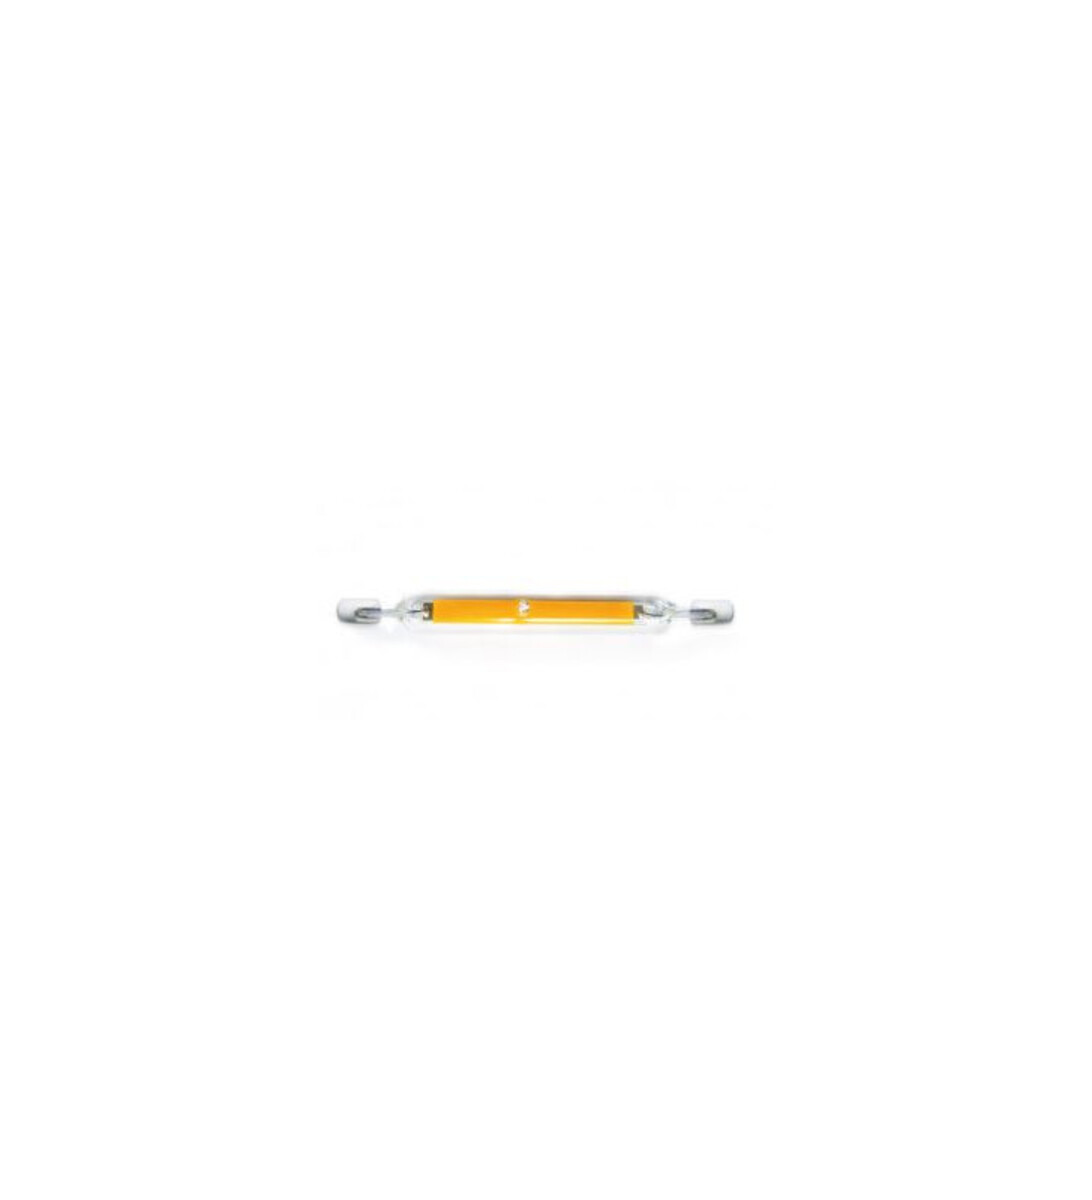 Ampoule crayon led 8w - 4000k - culot r7s